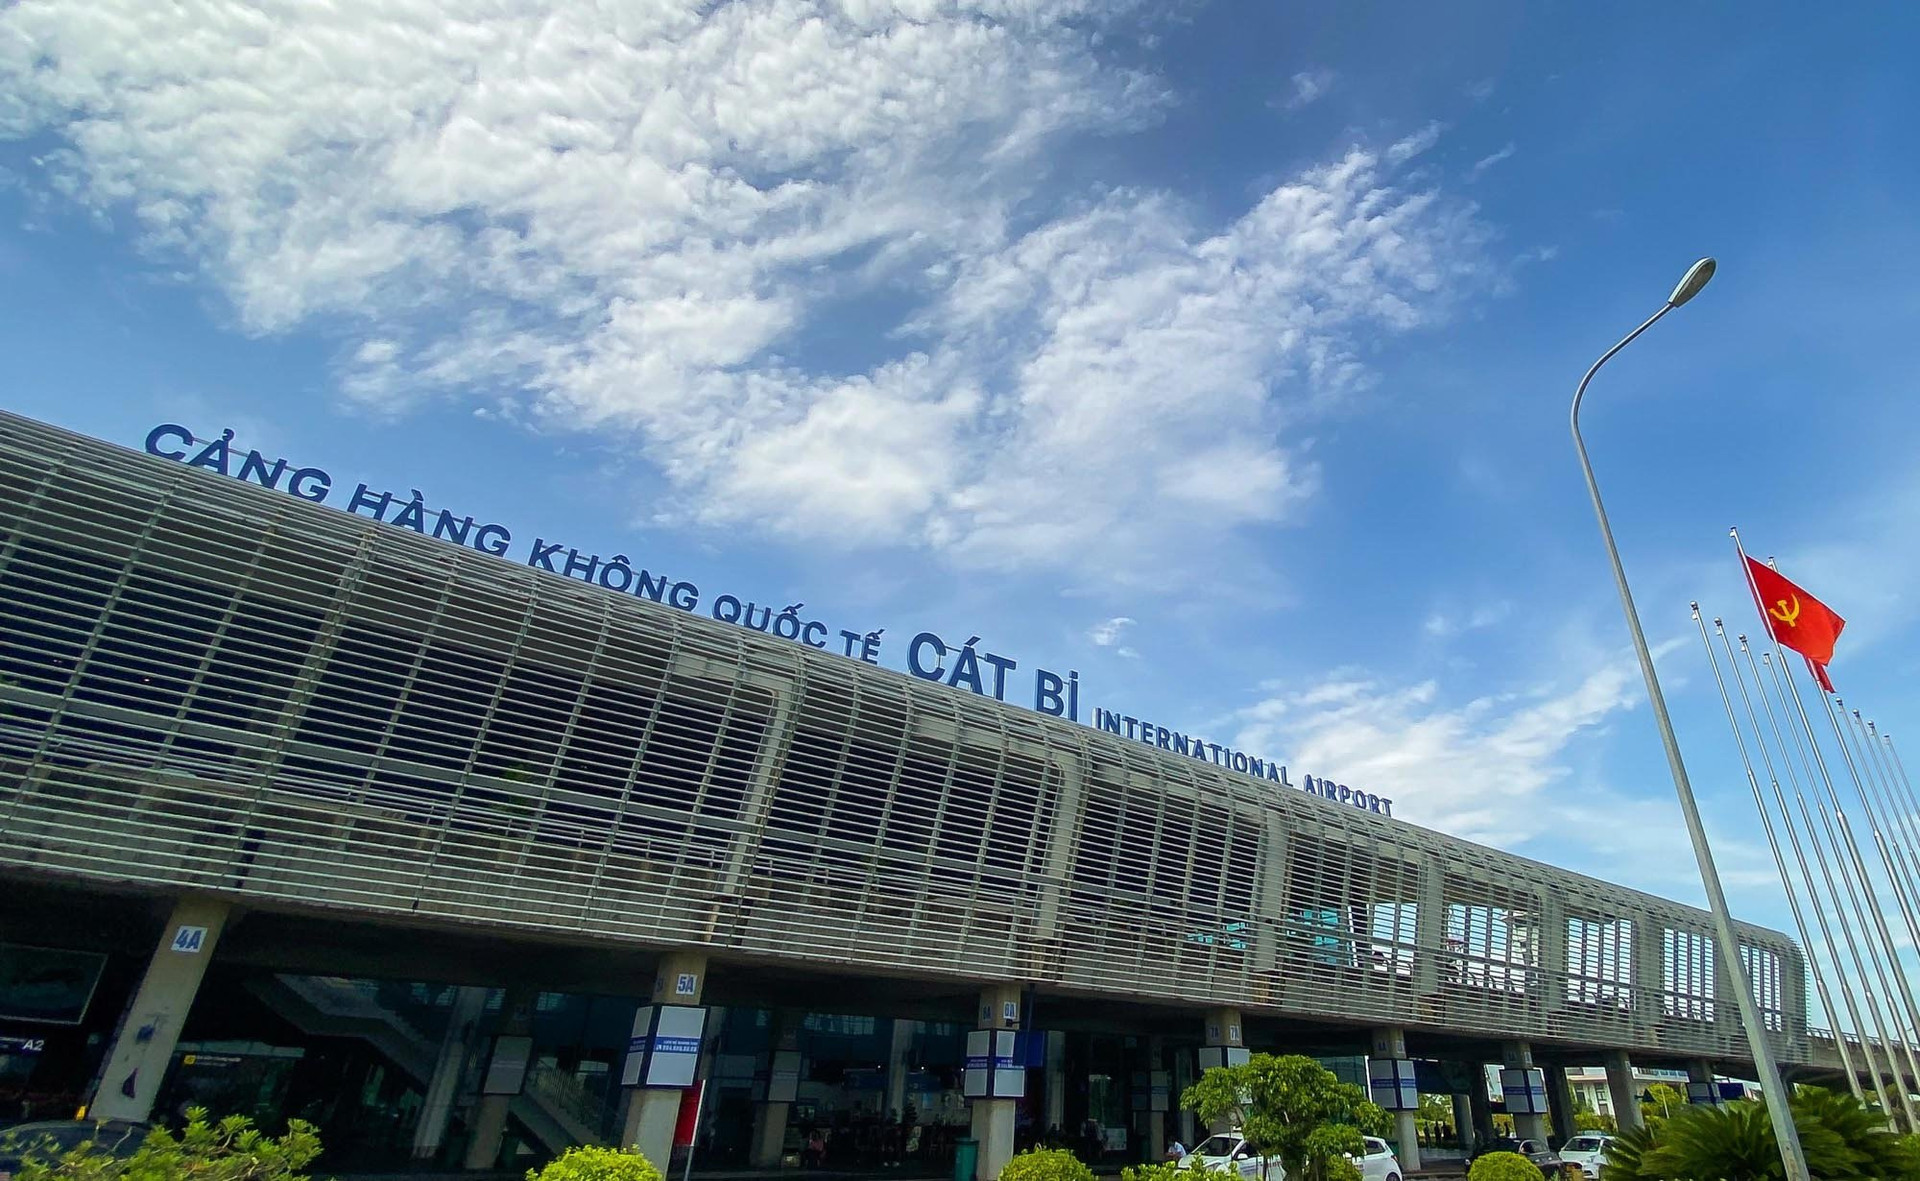 Sân bay Cát Bi (TP Hải Phòng) được quy hoạch cấp 4E với hai đường băng, hai nhà ga công suất 18 triệu khách/năm